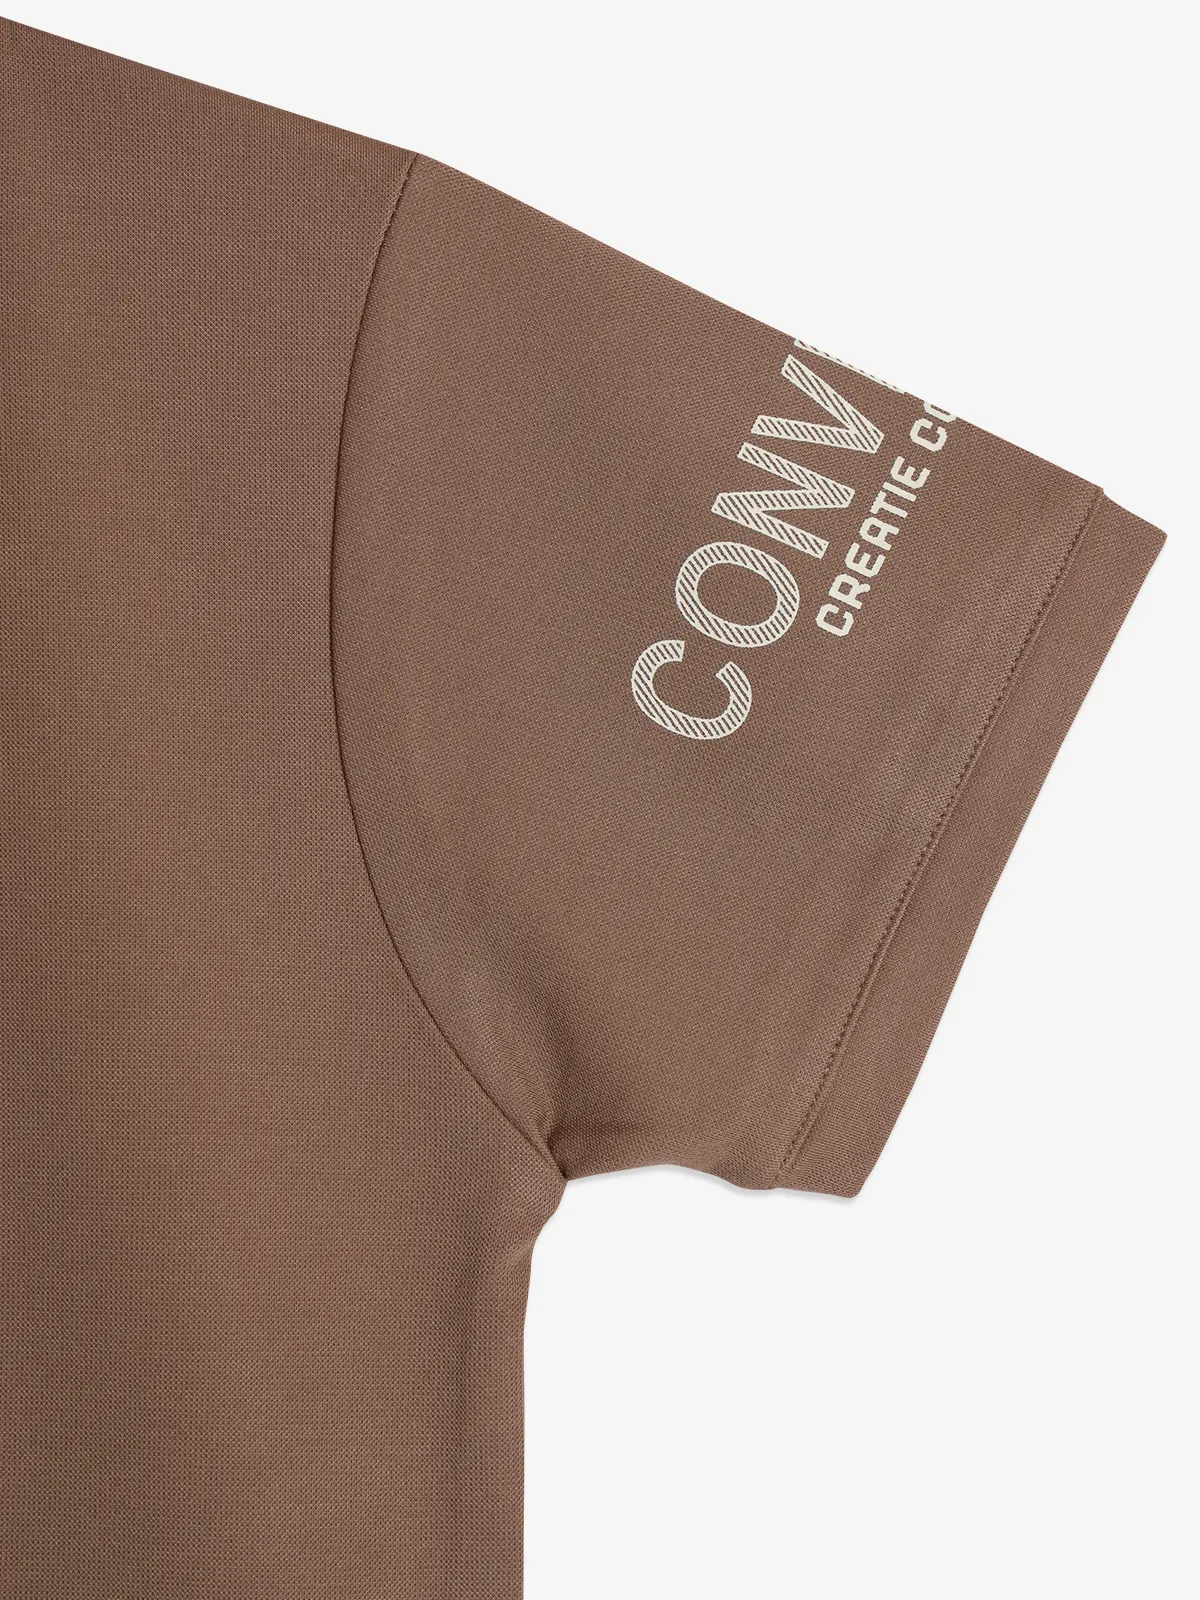 BAMBINI printed brown cotton t-shirt